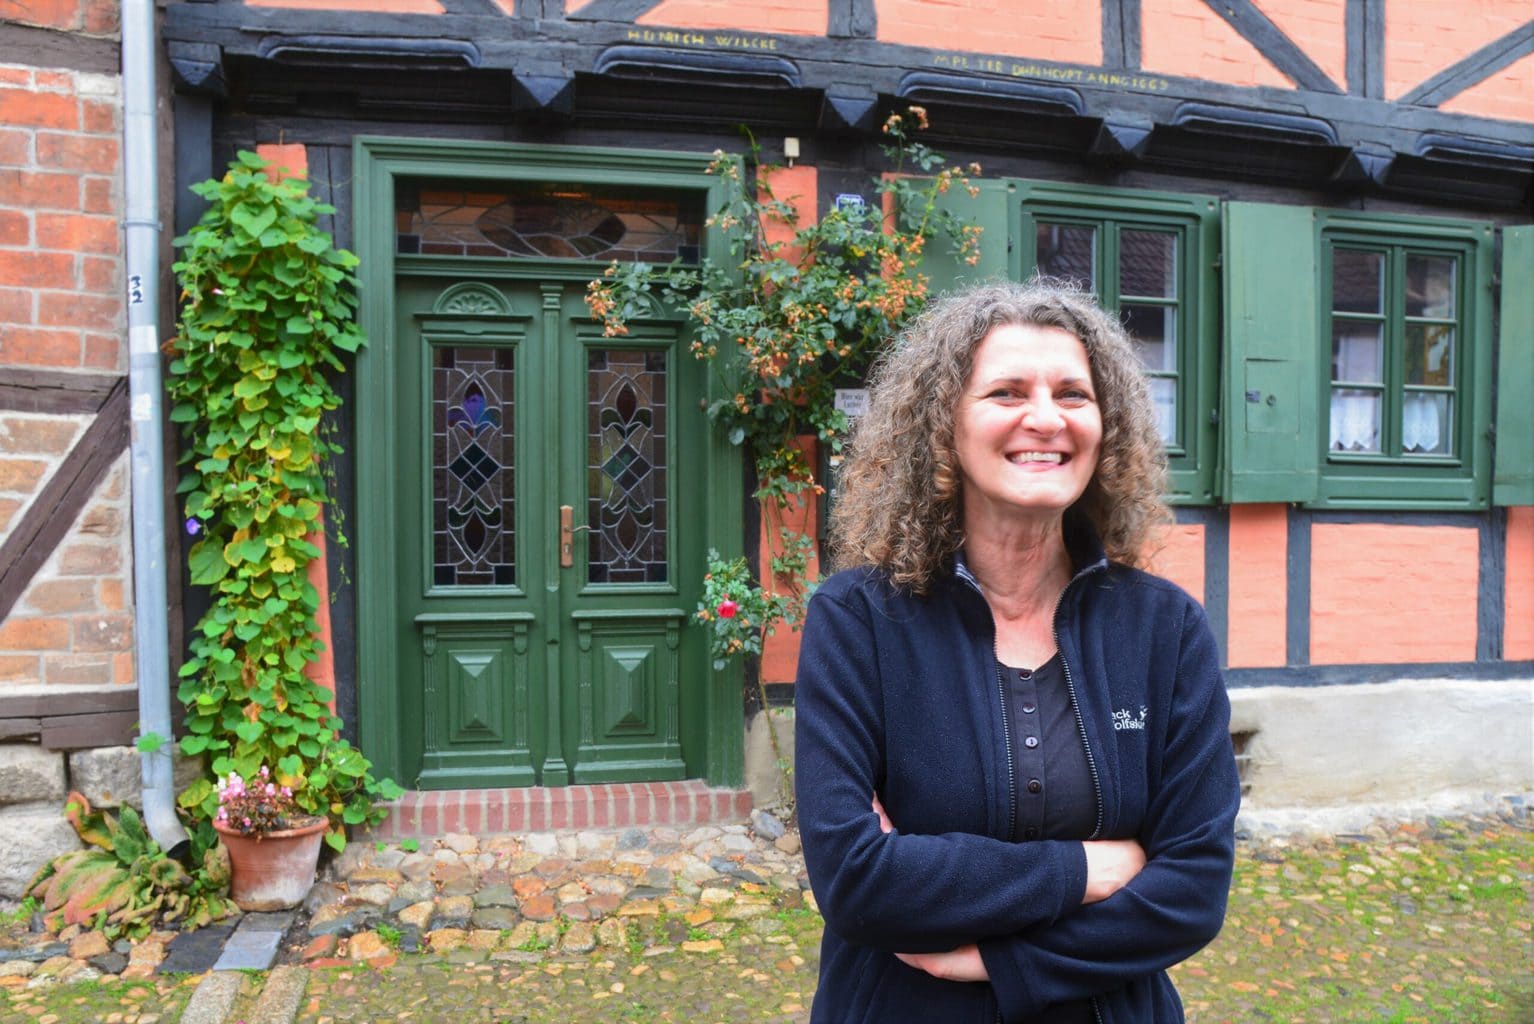 Gids Sabine Houben in Quedlinburg is van Nederlandse afkomst